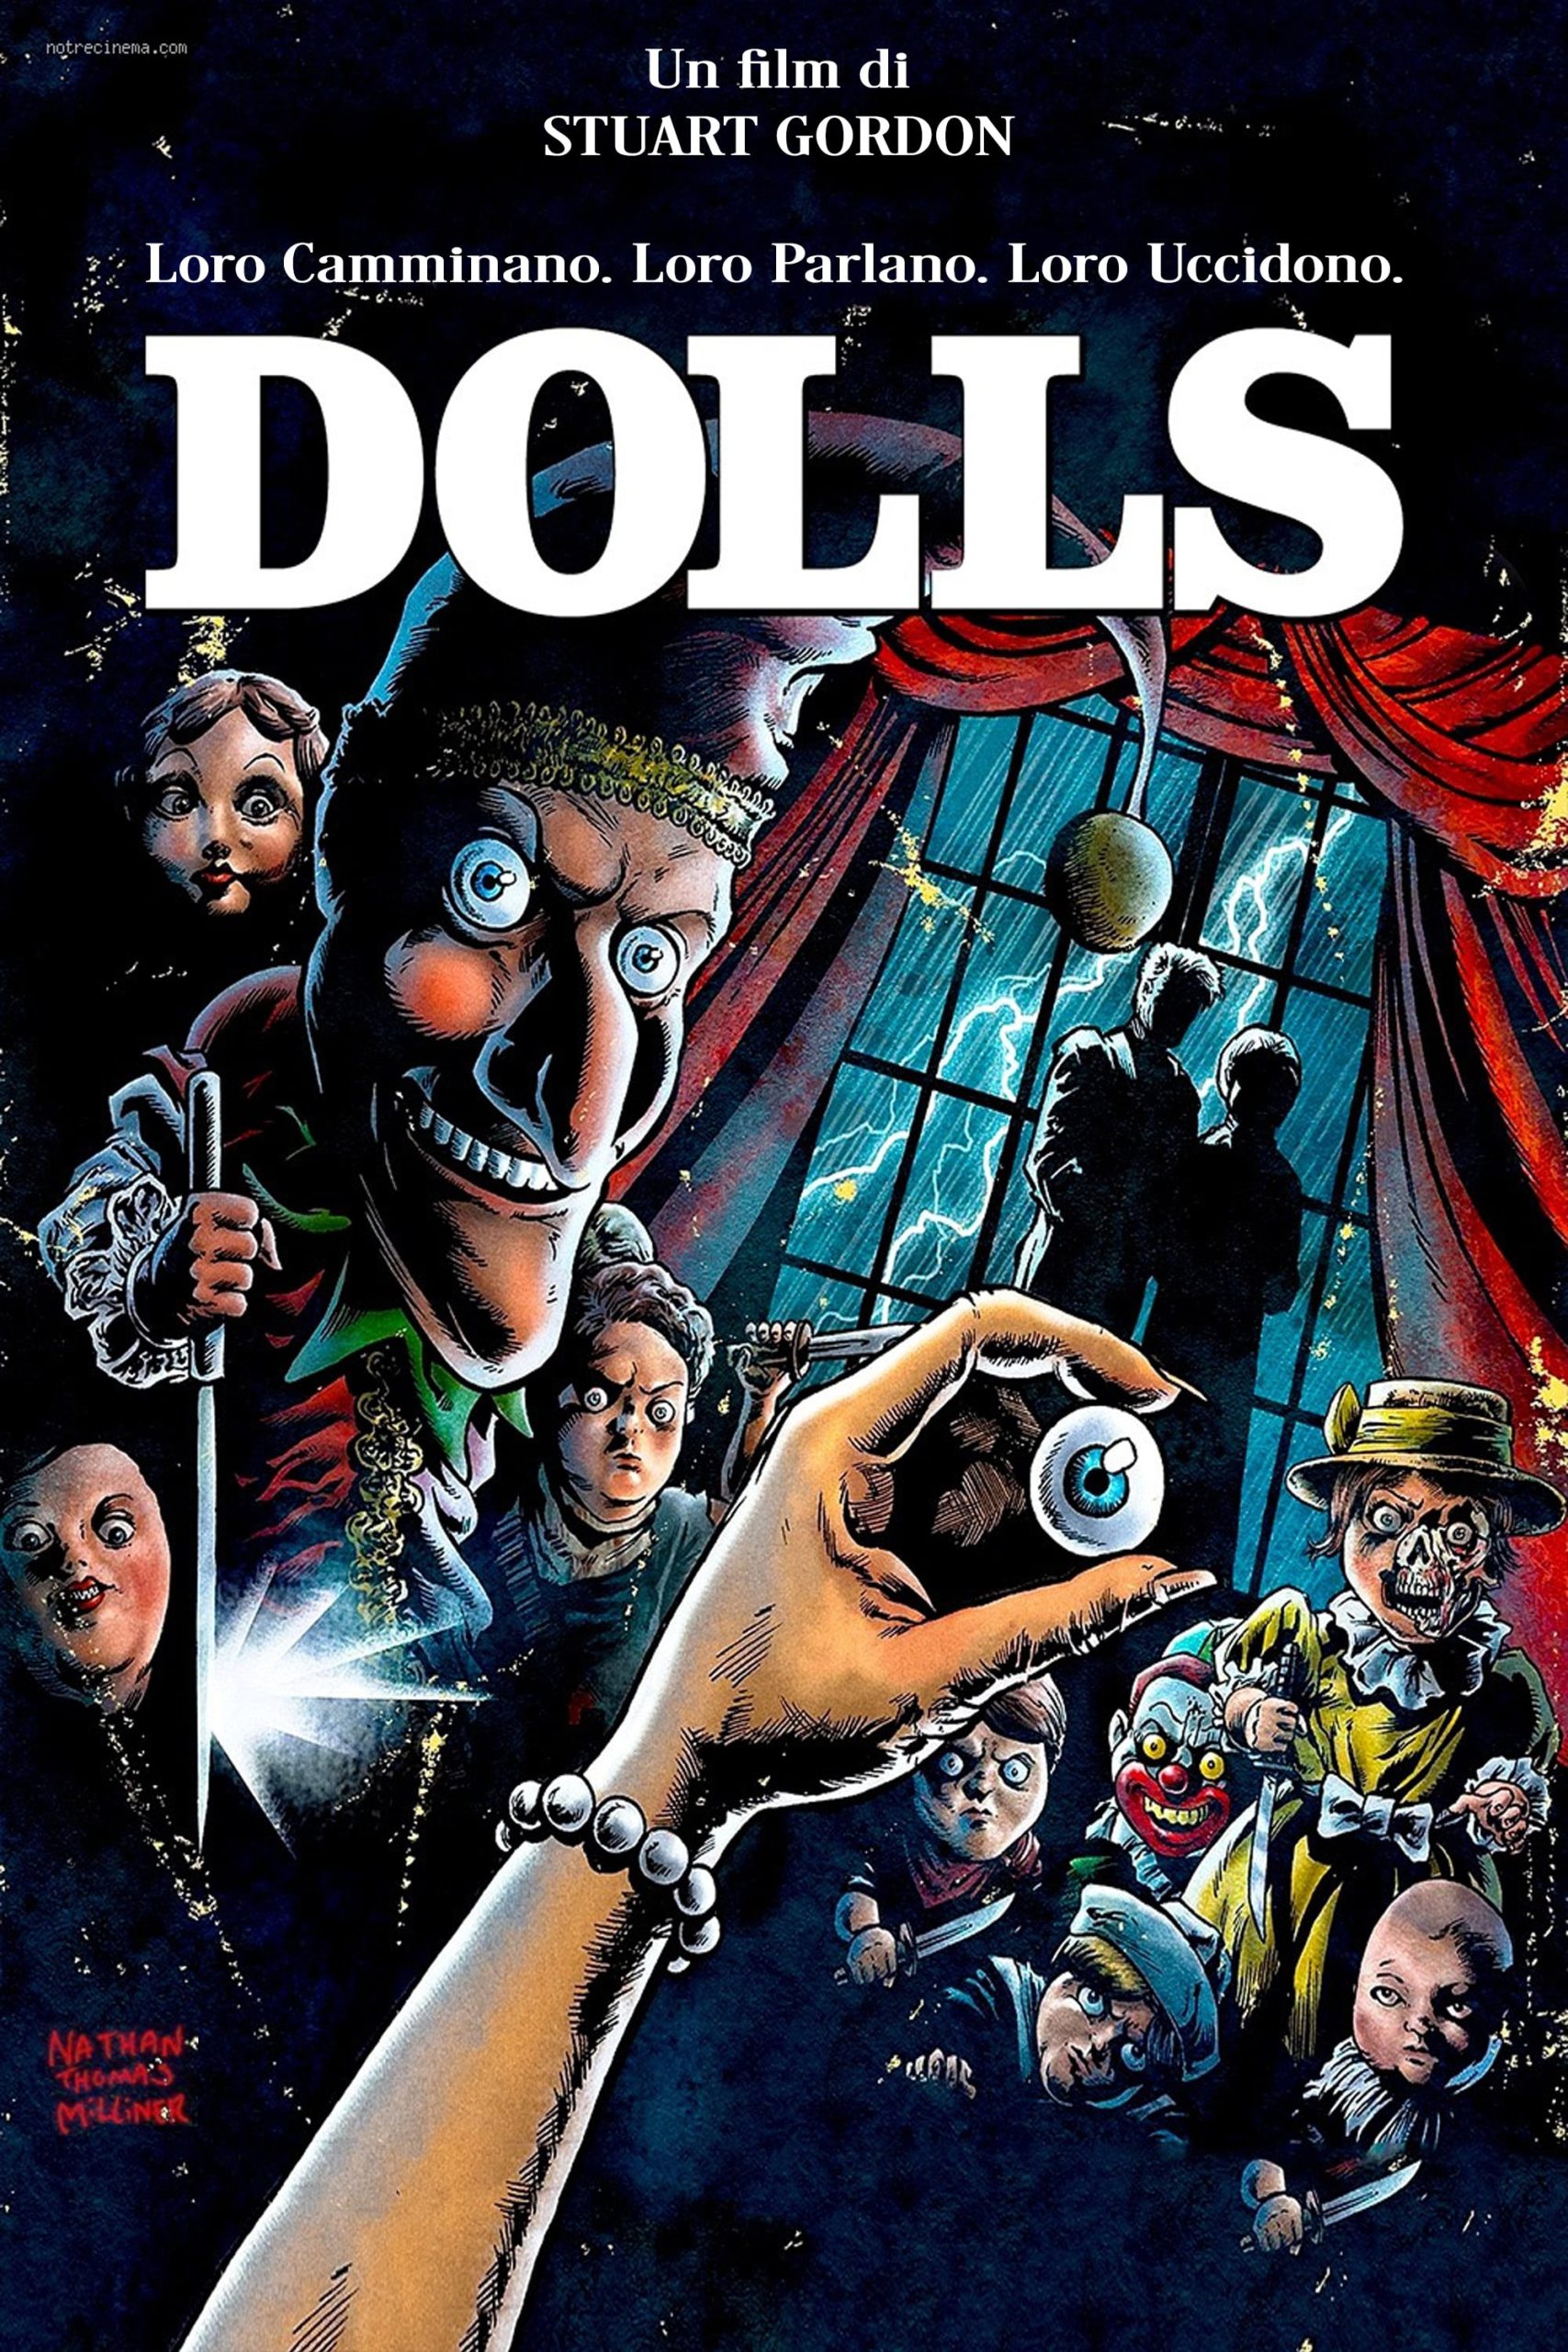 Dolls [HD] (1987)